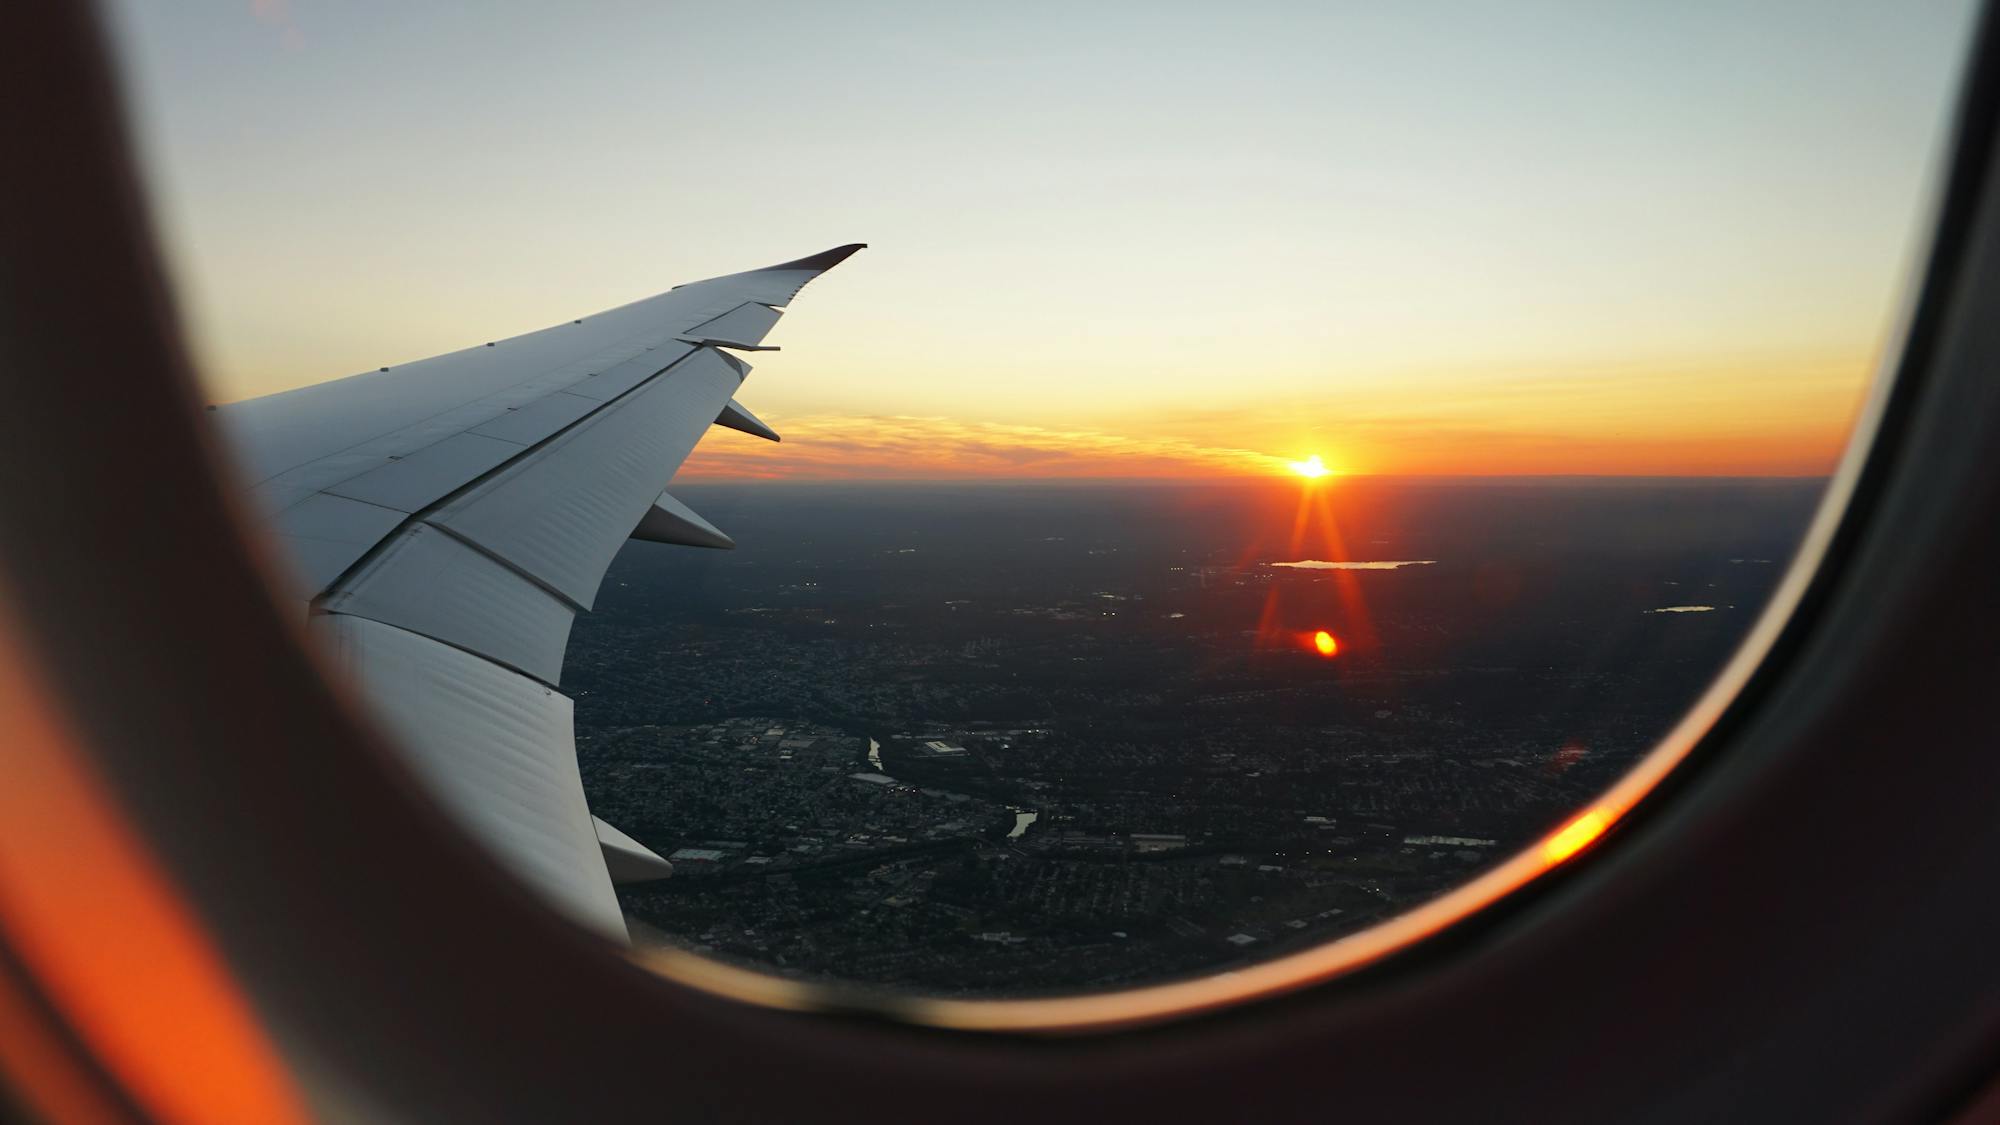 Widok z okna lecącego samolotu na wielkie miasto i zachodzące słońce.